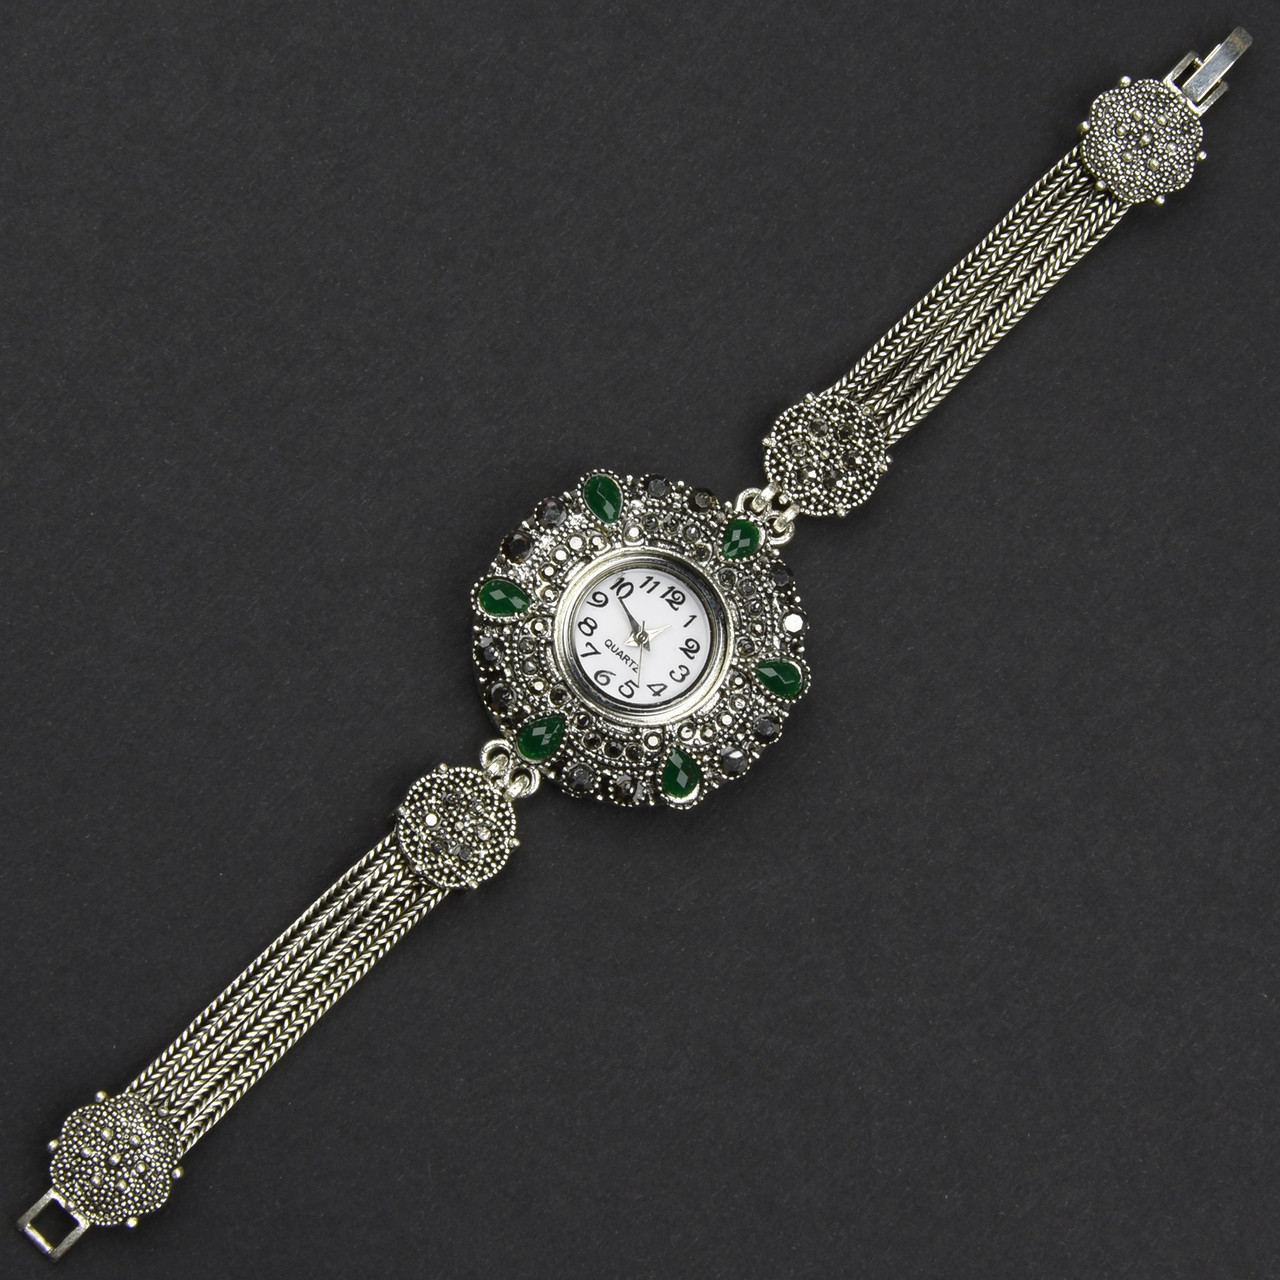 Женские часы винтажные круглые кварцевые металл в серебристом цвете с зелёными камушками стразами длина 19 см